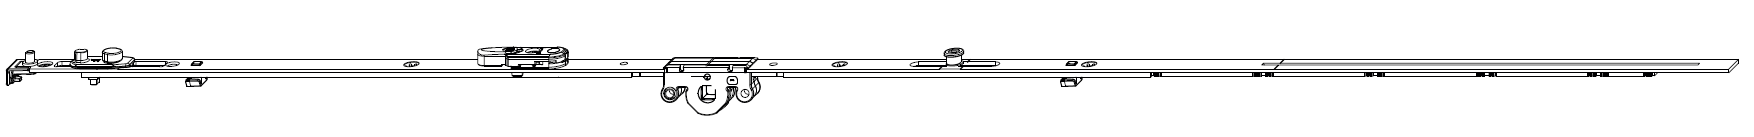 MAICO -  Cremonese MULTI-MATIC anta ribalta altezza maniglia fissa con piedino e dss per ribalta e bilanciere - gr / dim. 660 - entrata 15 - alt. man. 190 - lbb/hbb 431 - 660